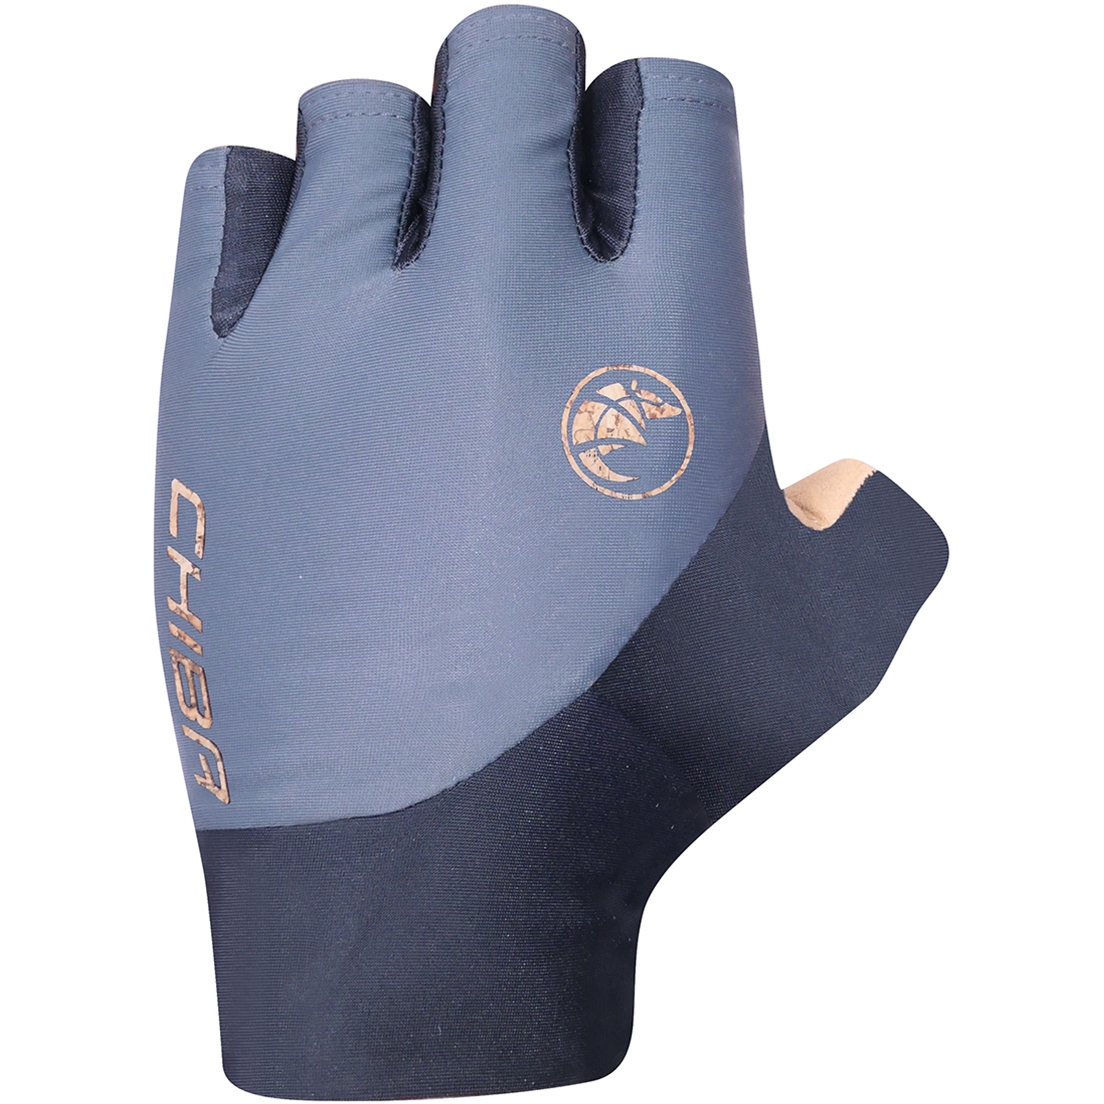 Productfoto van Chiba BioXCell ECO Pro Handschoenen met Korte Vingers - dark grey